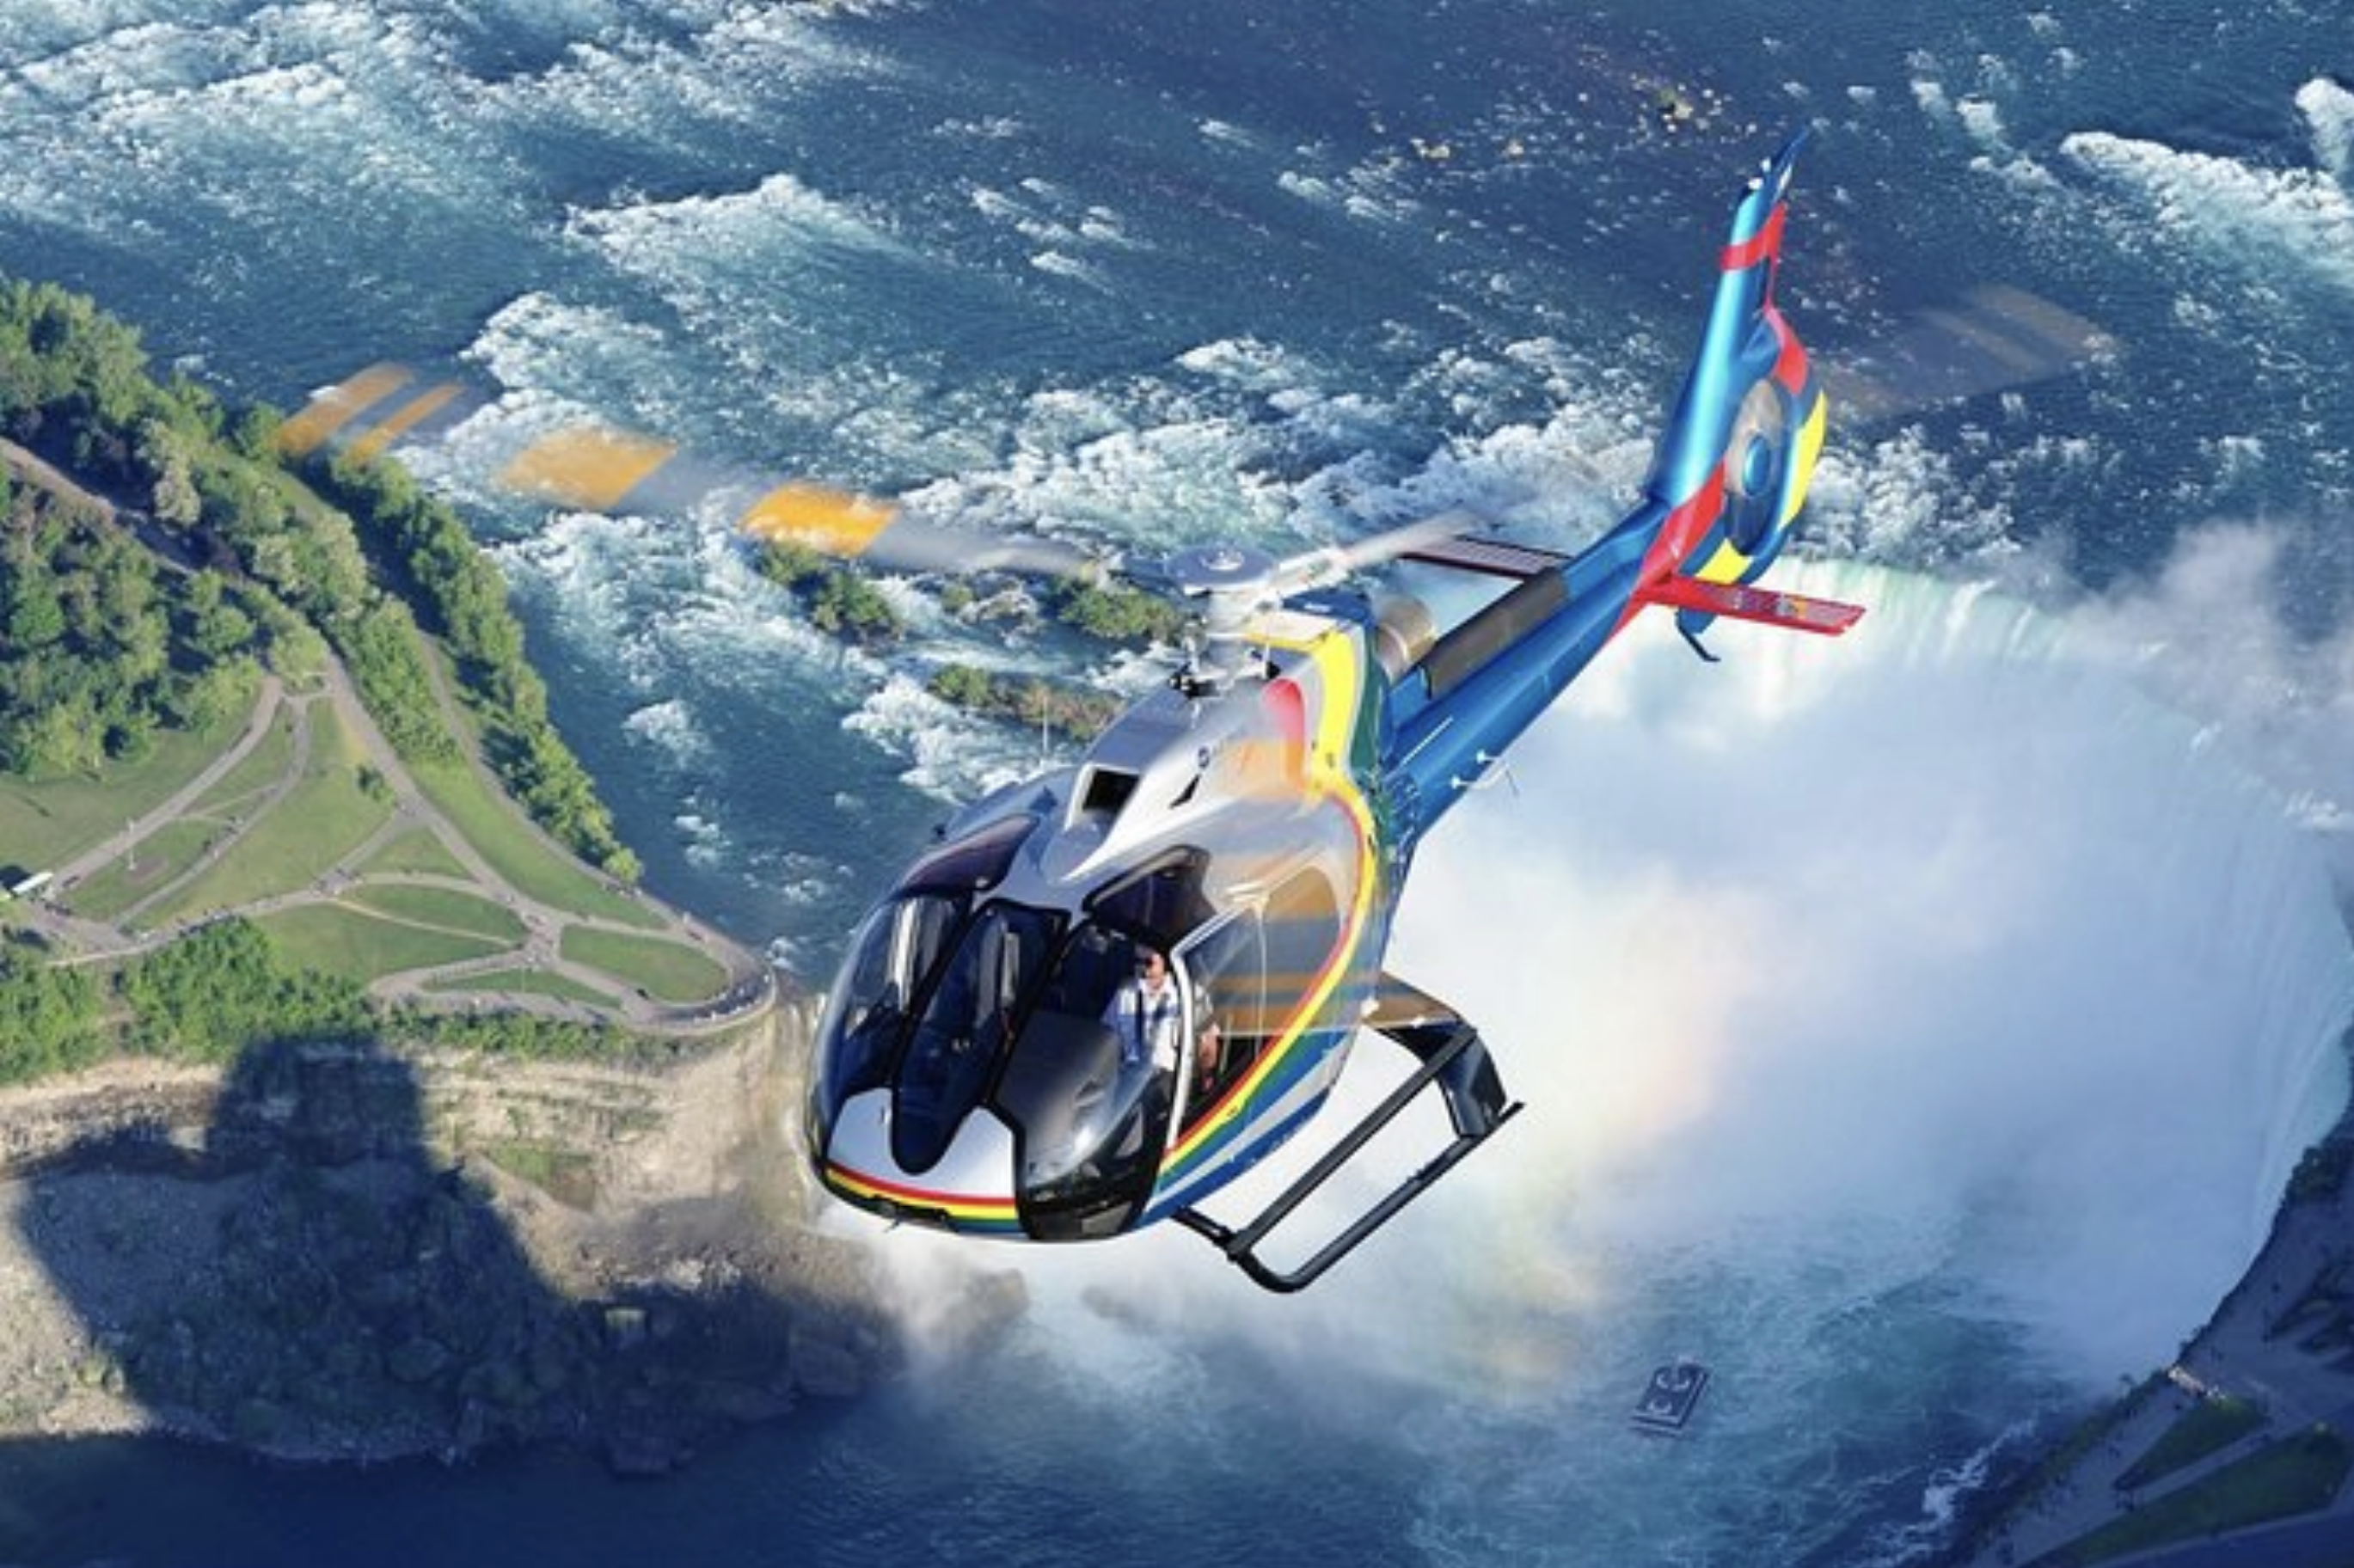 1. Niagara Falls Canada Helicopter Tour